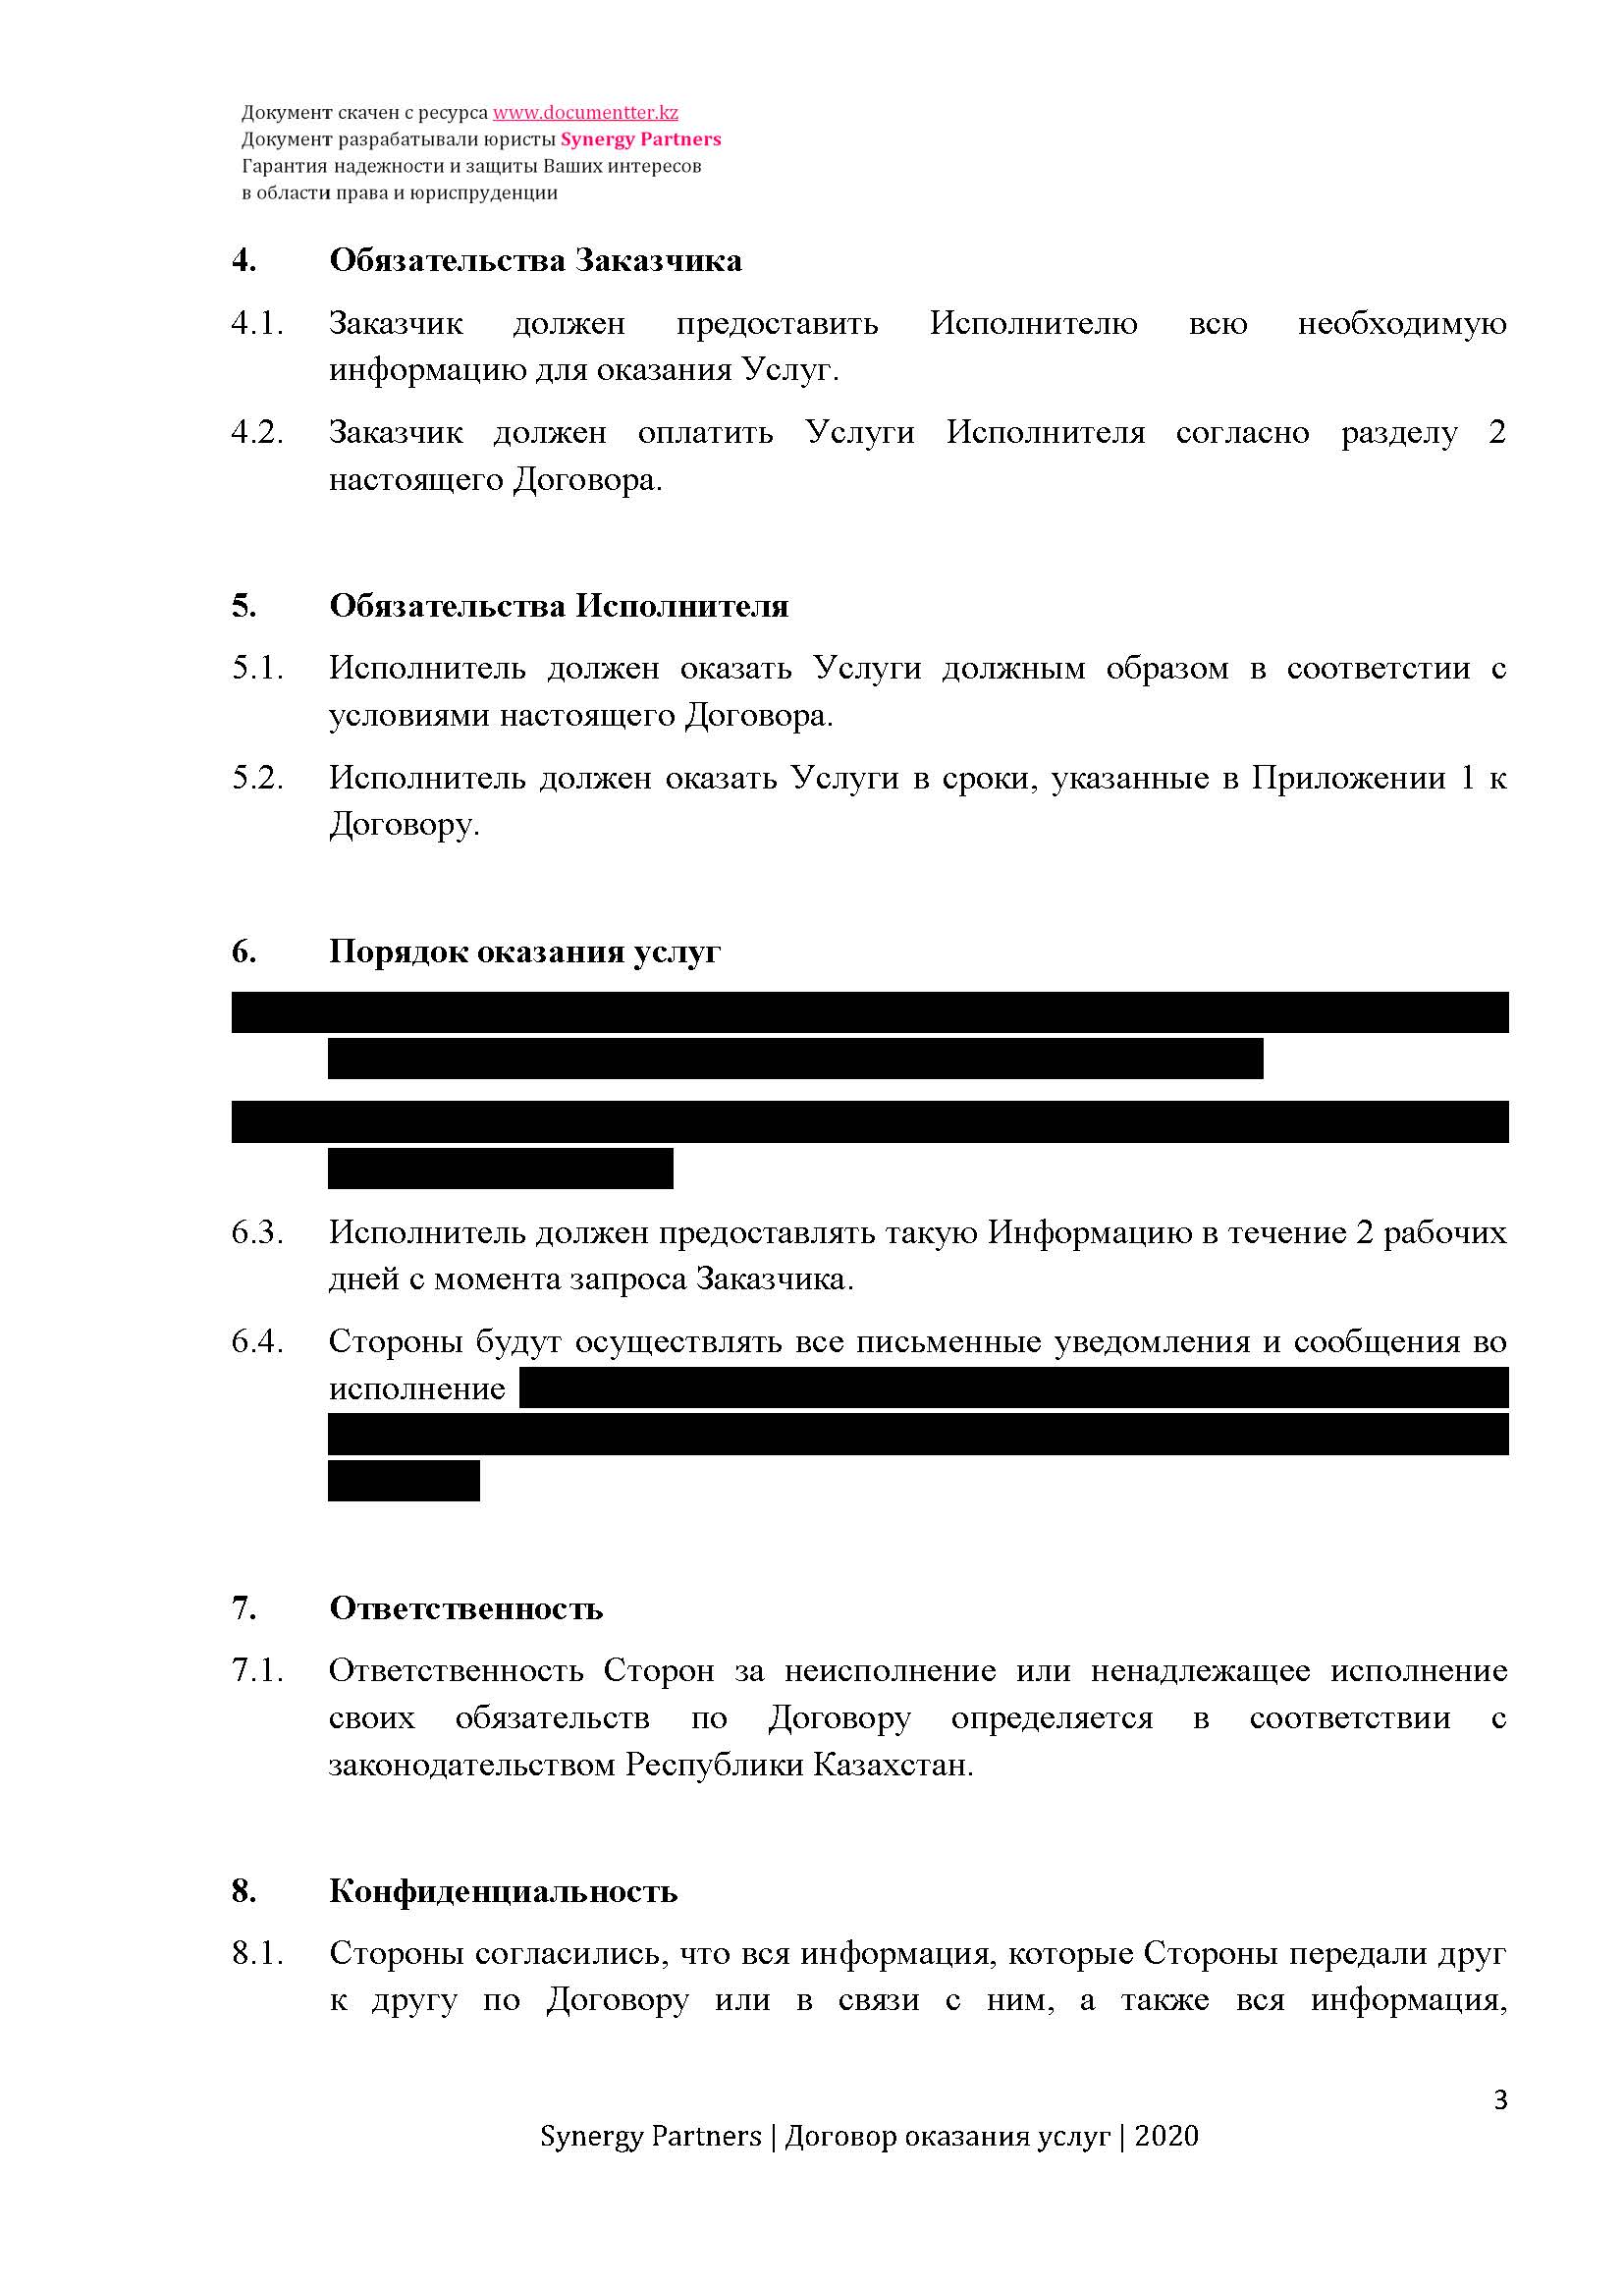 Договор оказания услуг | documentterkz.com в Казахстане